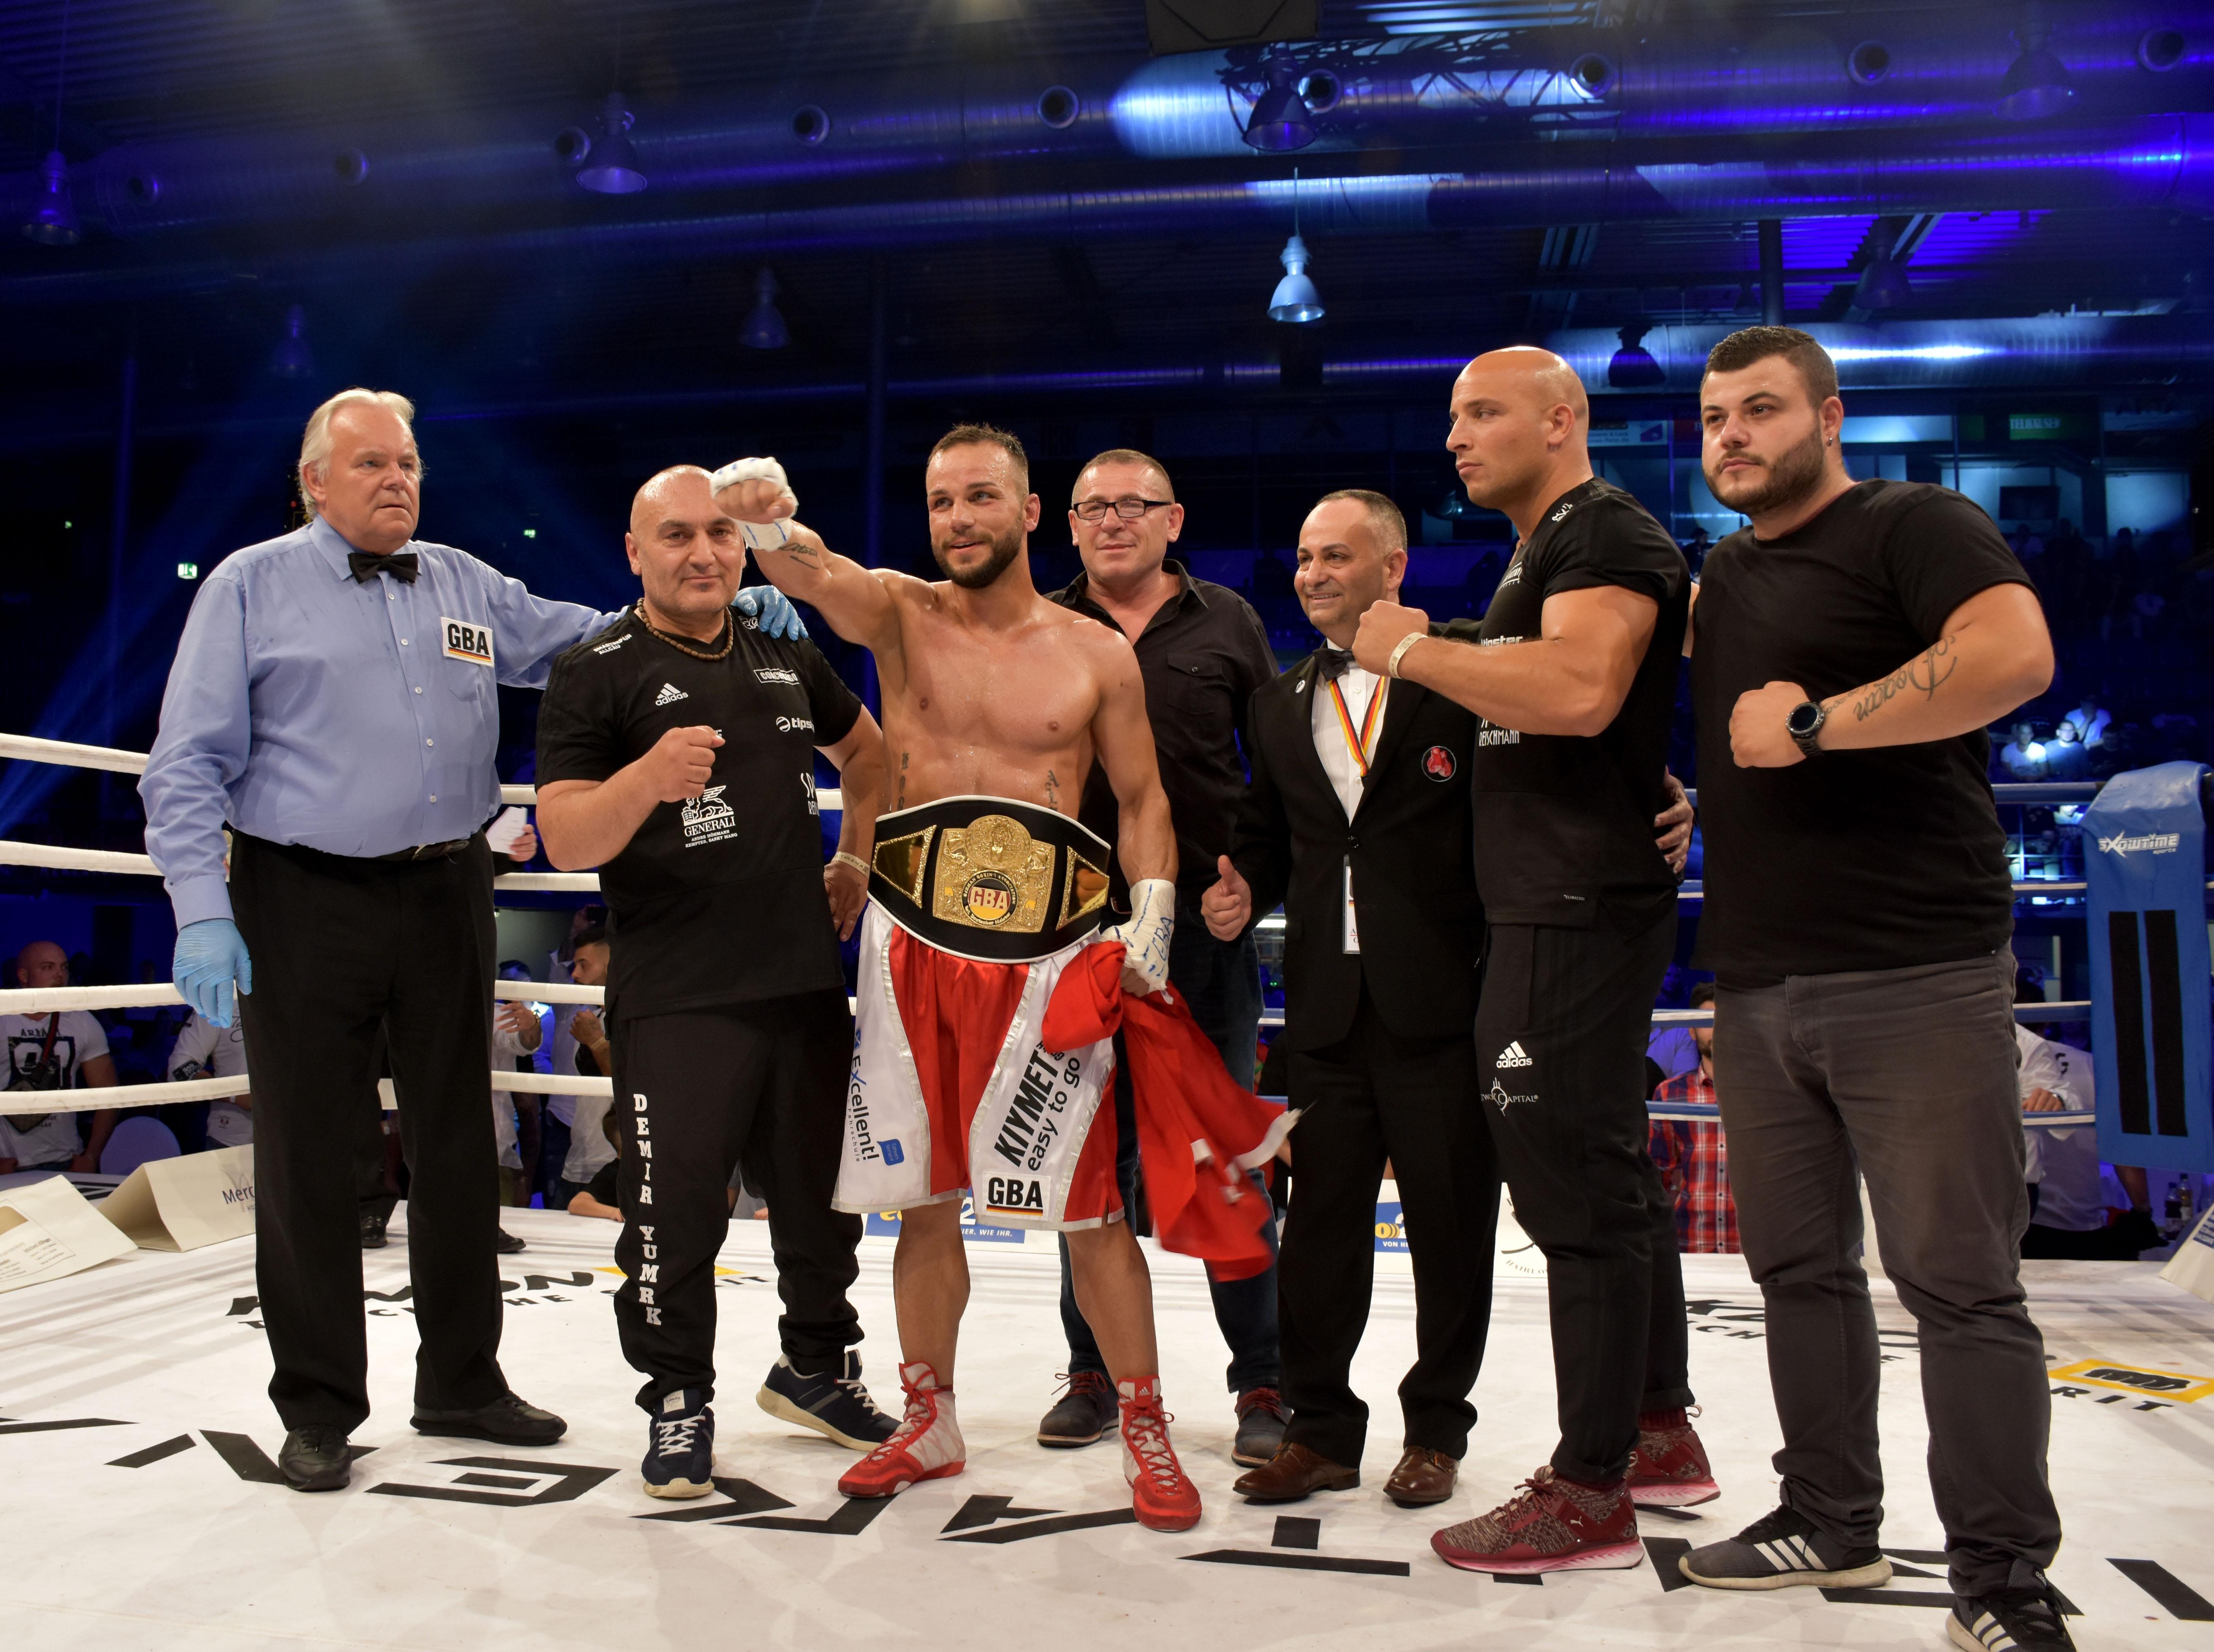 Almanya’da yaşayan Türk boksör Altay altın kemer kazandı